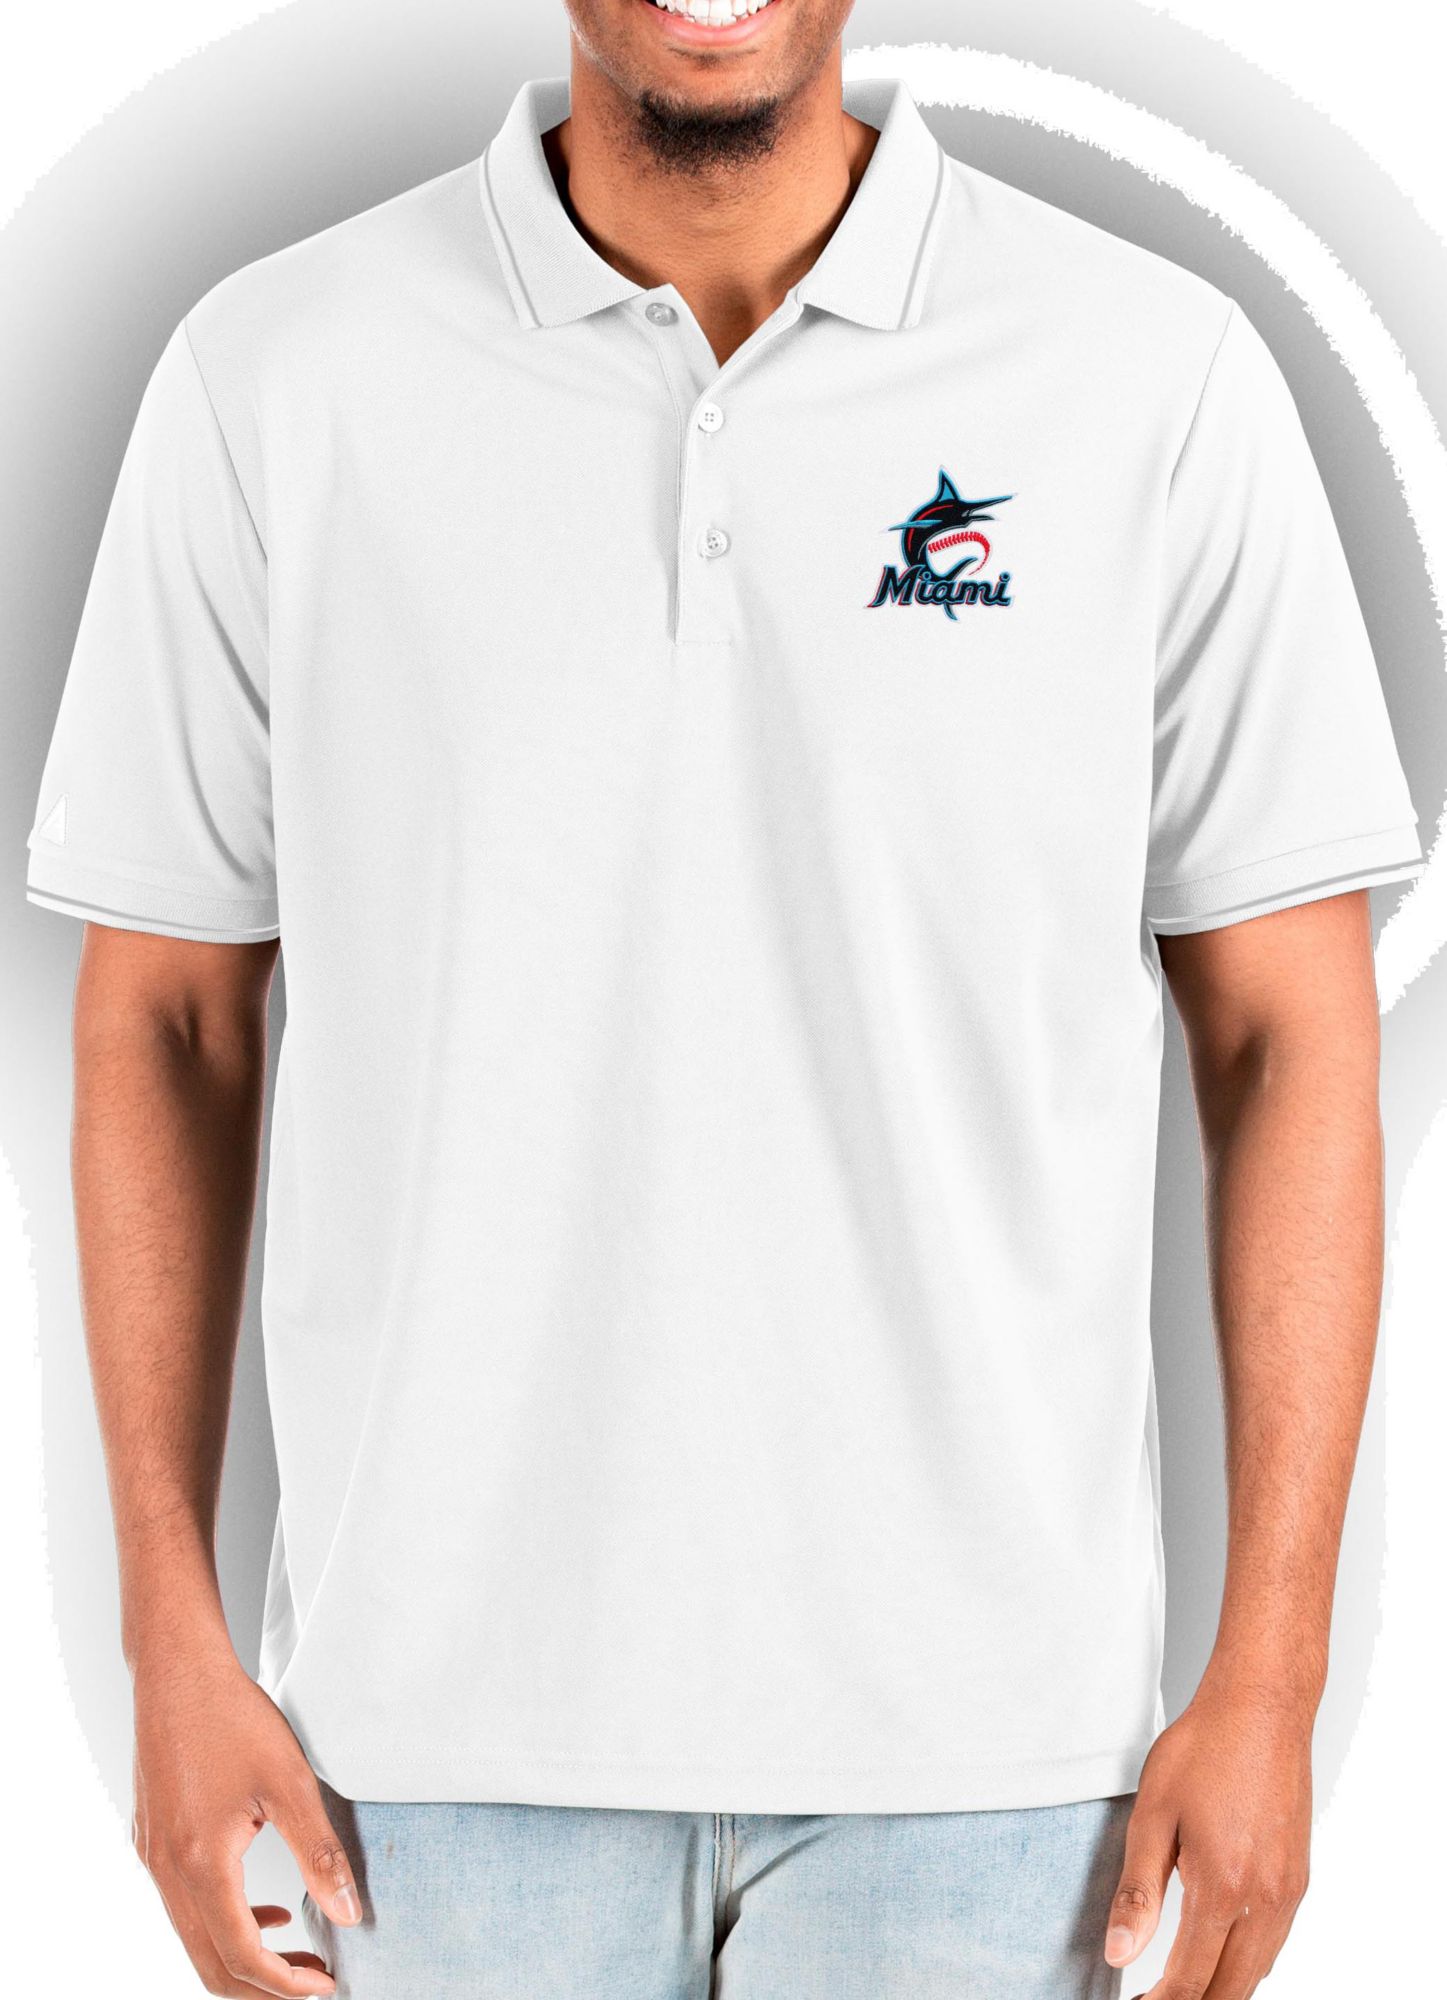 Camiseta de béisbol Replica para hombre MLB Miami Marlins.